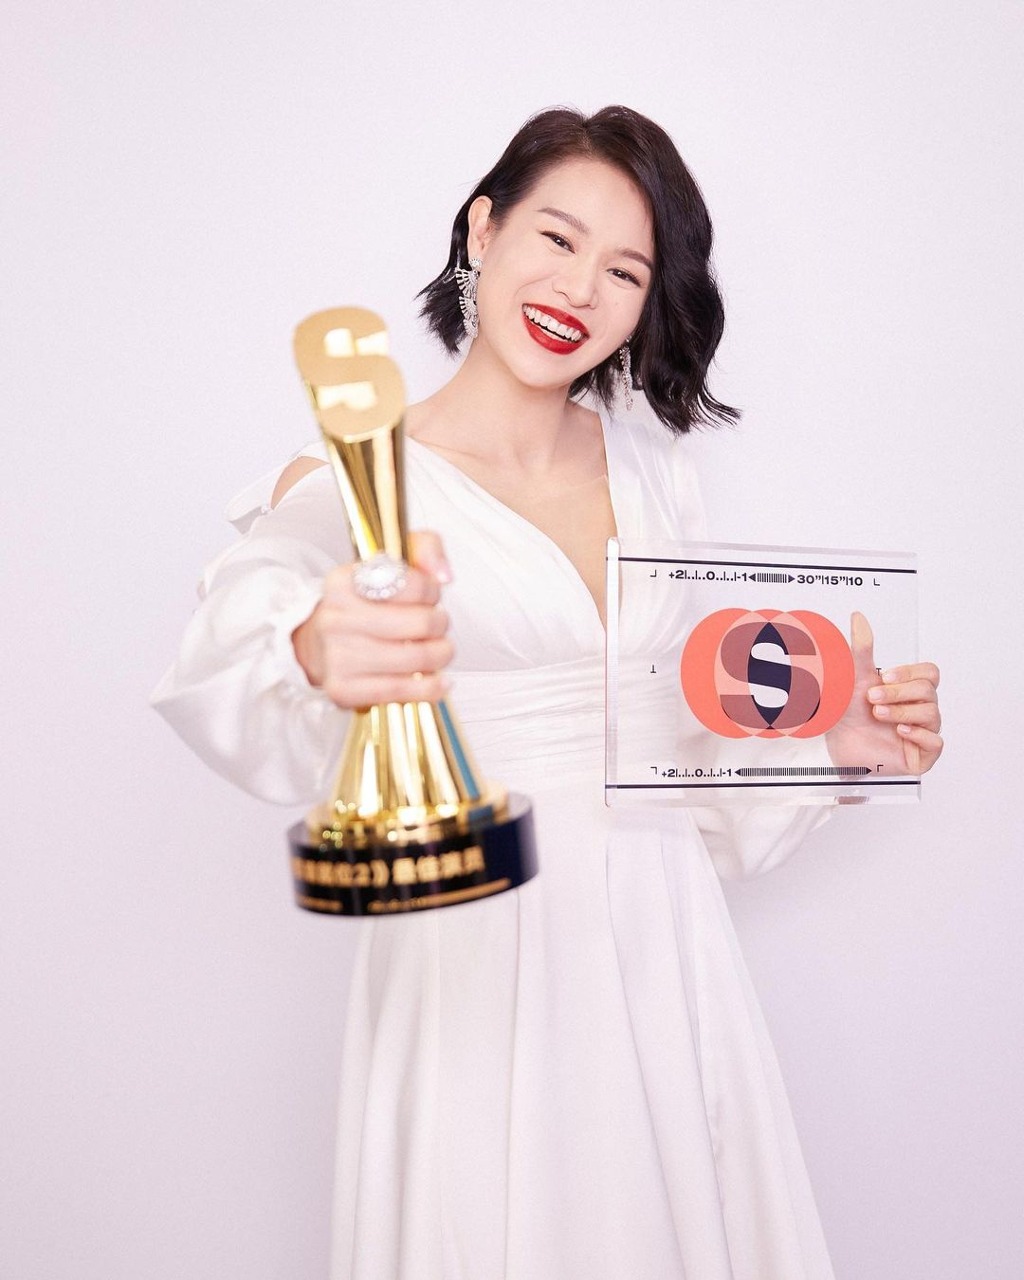 虽然肥田未能为胡杏儿夺得香港的奖项，不过胡杏儿在2011年凭剧集《万凤之王》封视后。其演技实力近年曾已受到国内认可。